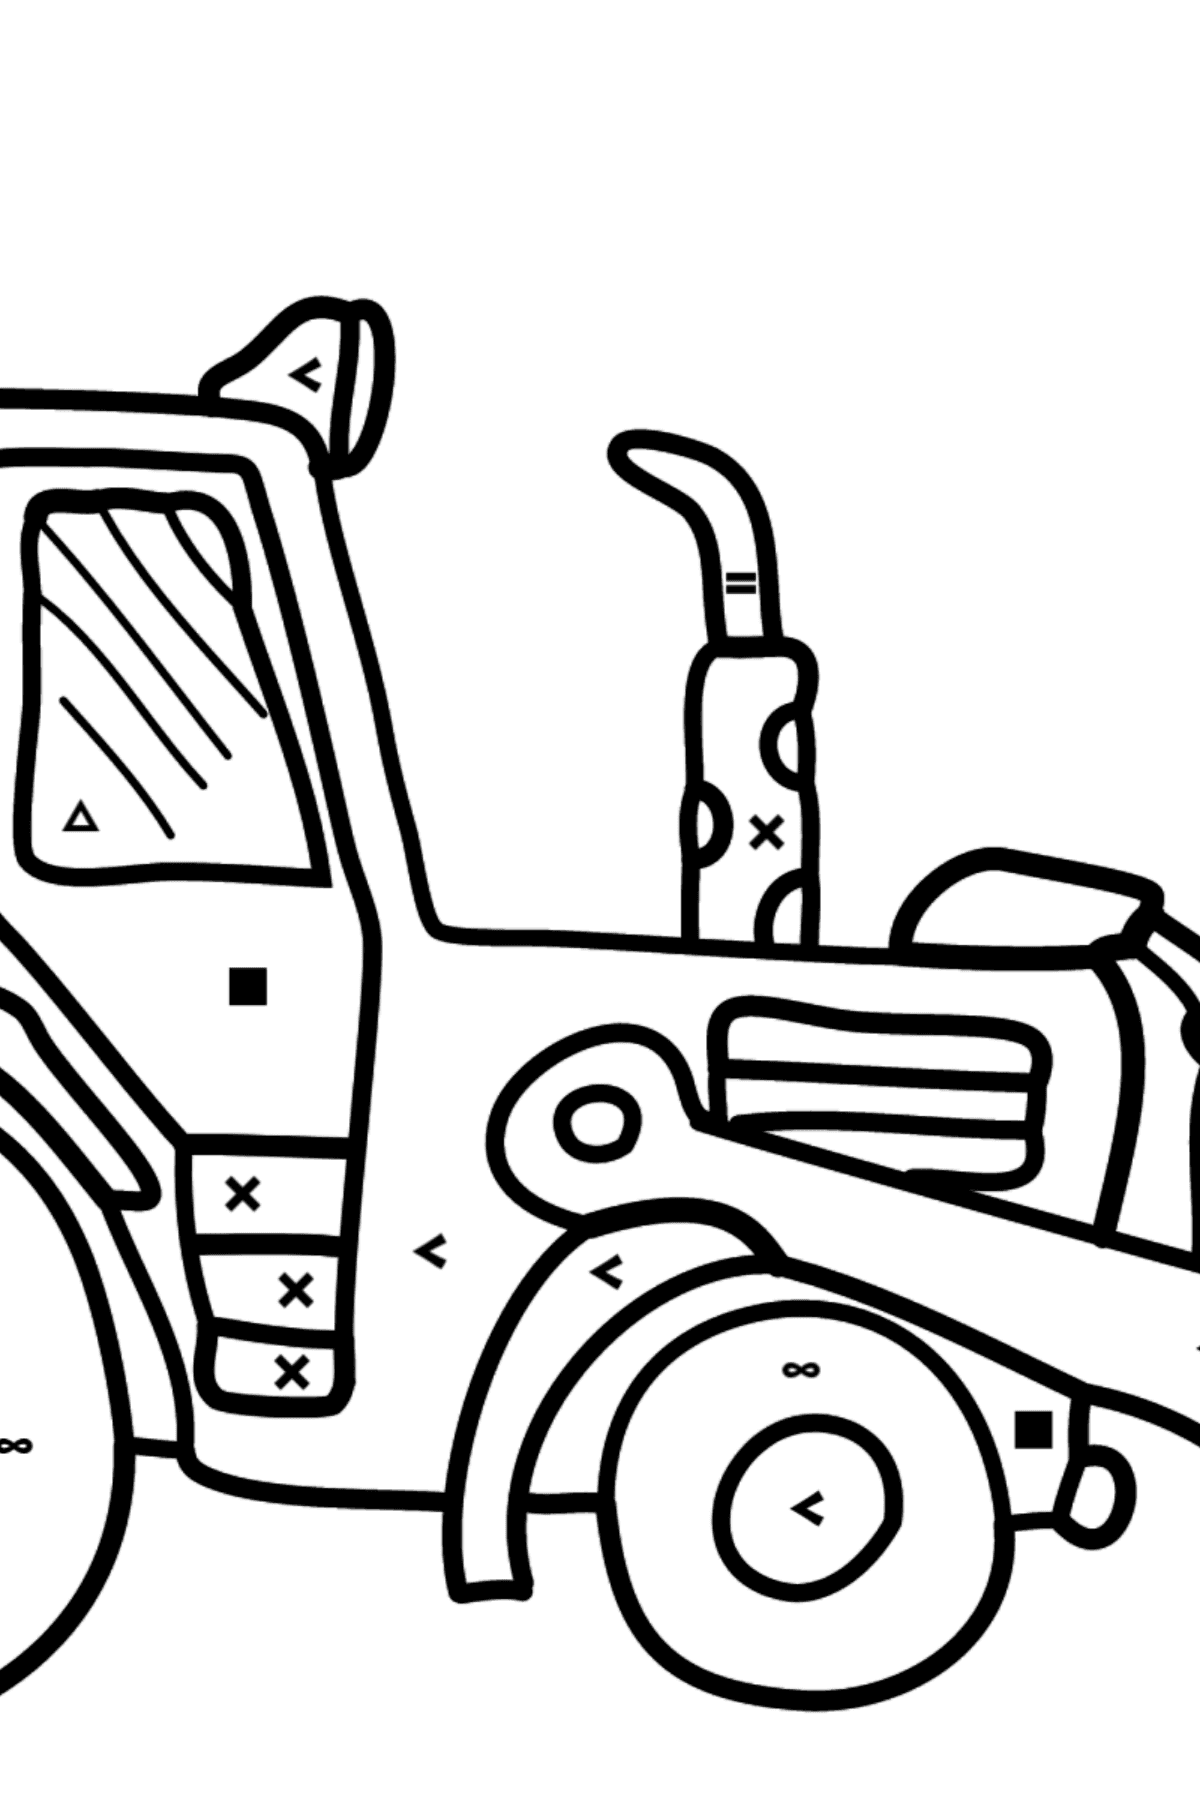 Coloriage - Un tracteur jaune - Coloriage par Symboles pour les Enfants